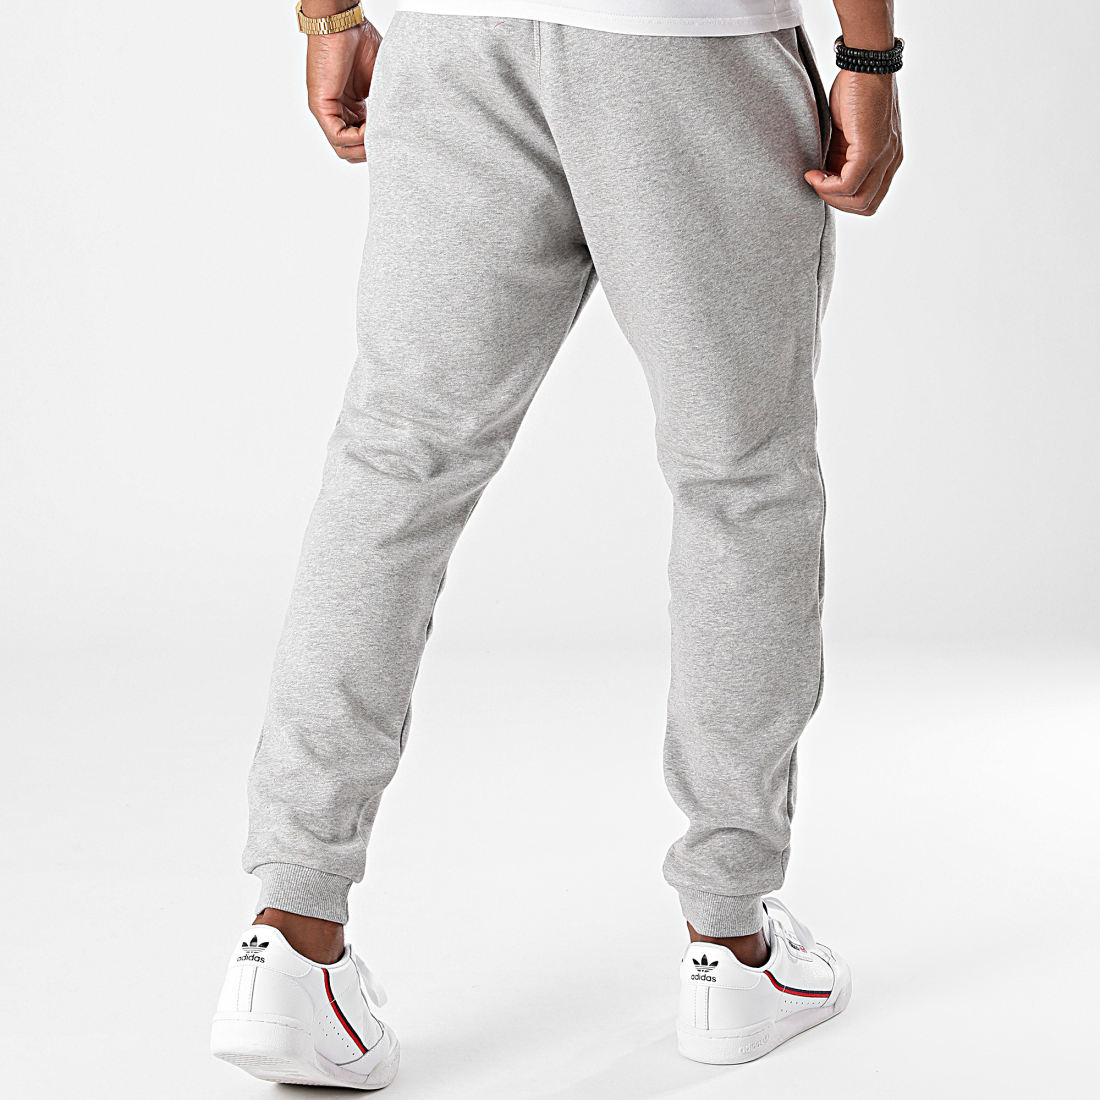 Pantalon ROANNE style jogging gris imprimé logo MARC CAIN — Vetement  original femme fashion, tenue mode chic haut de gamme